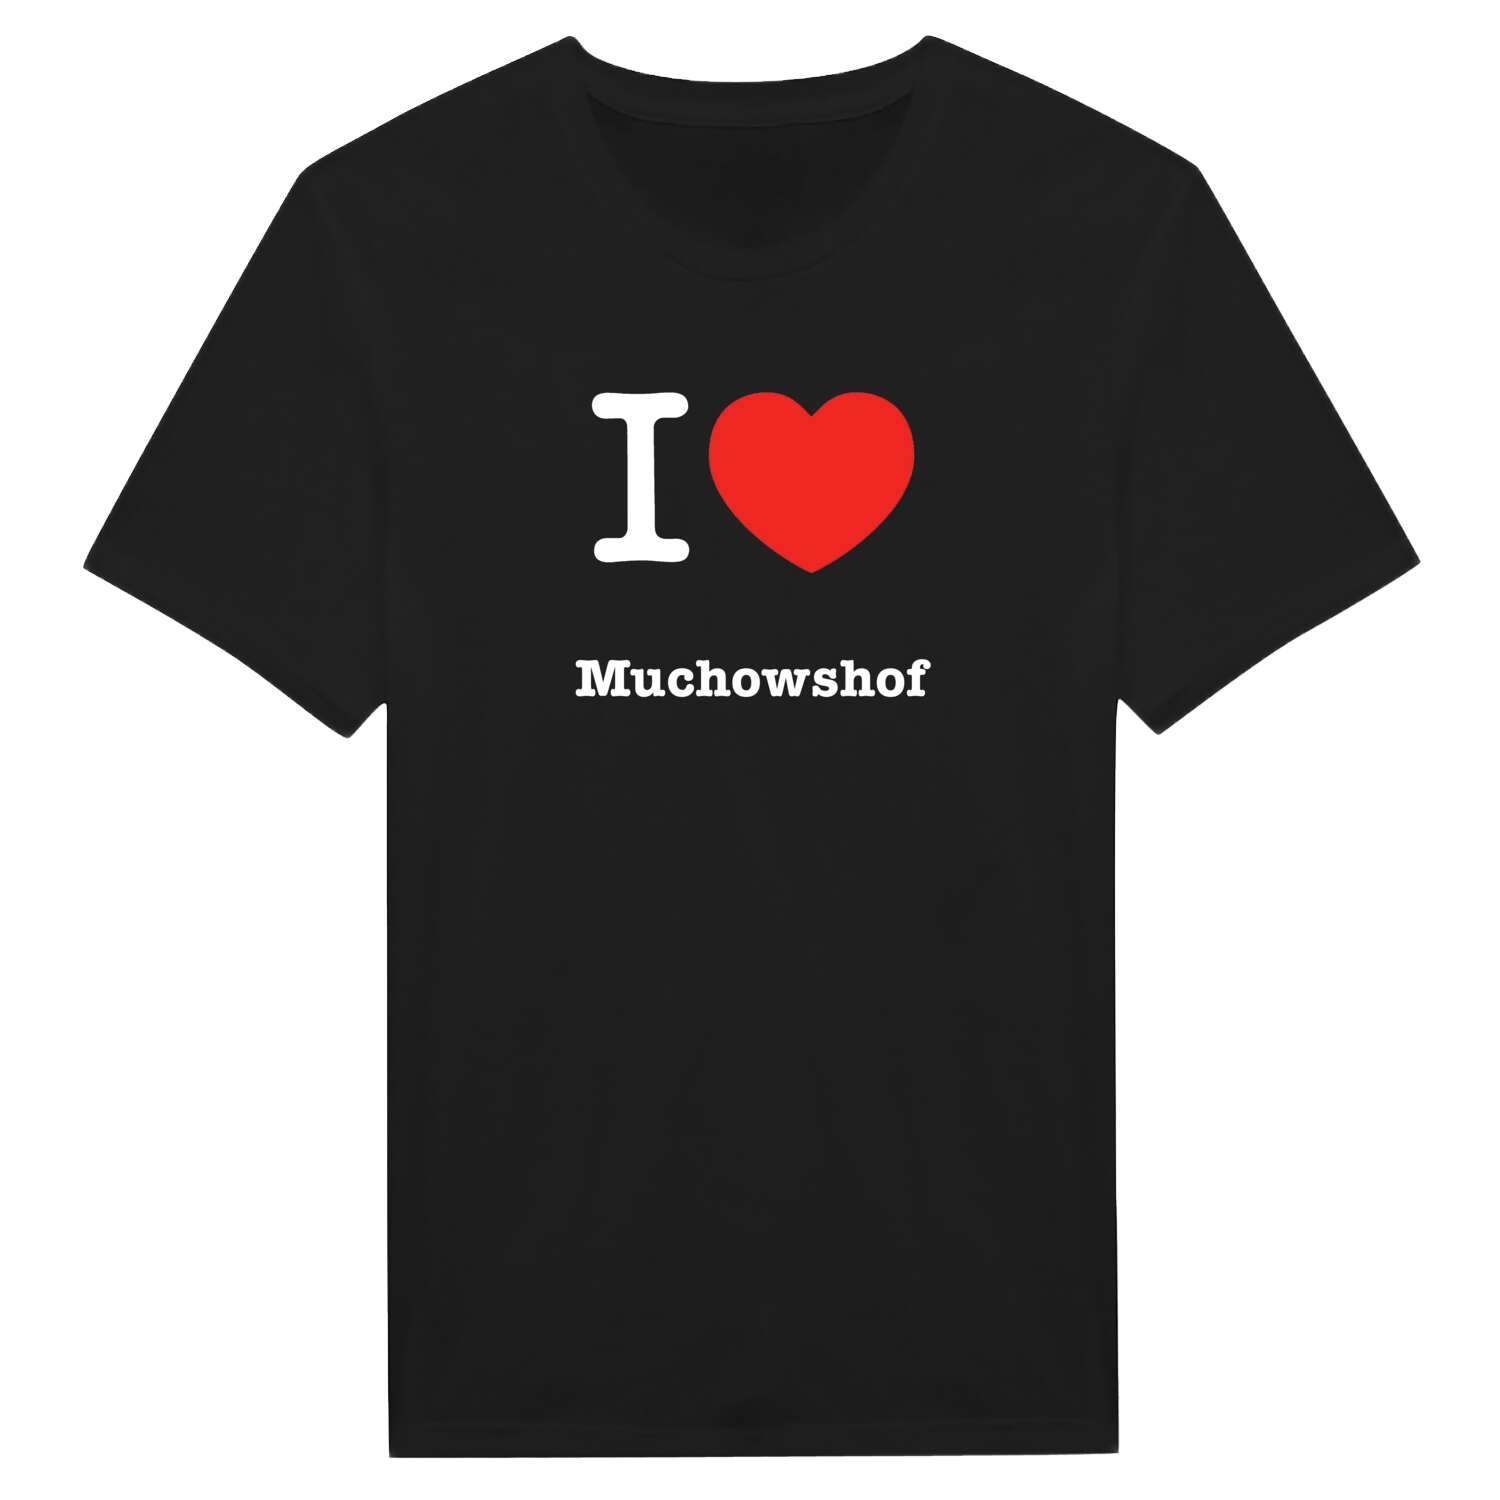 Muchowshof T-Shirt »I love«